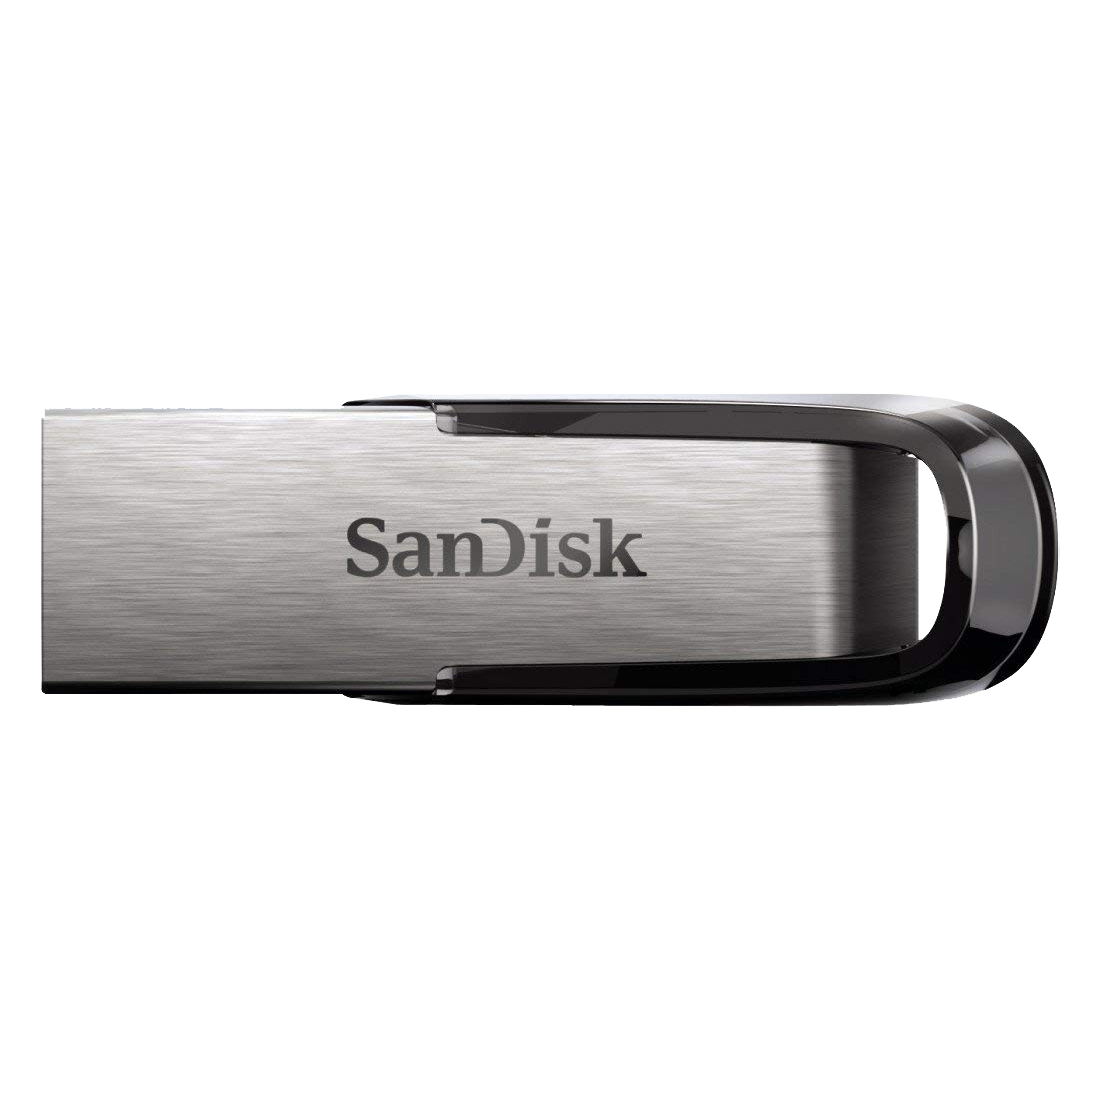 SanDisk - Sandisk Ultra Fair 32GB Pen Drive (SDCZ73-032G-I35, Silver)